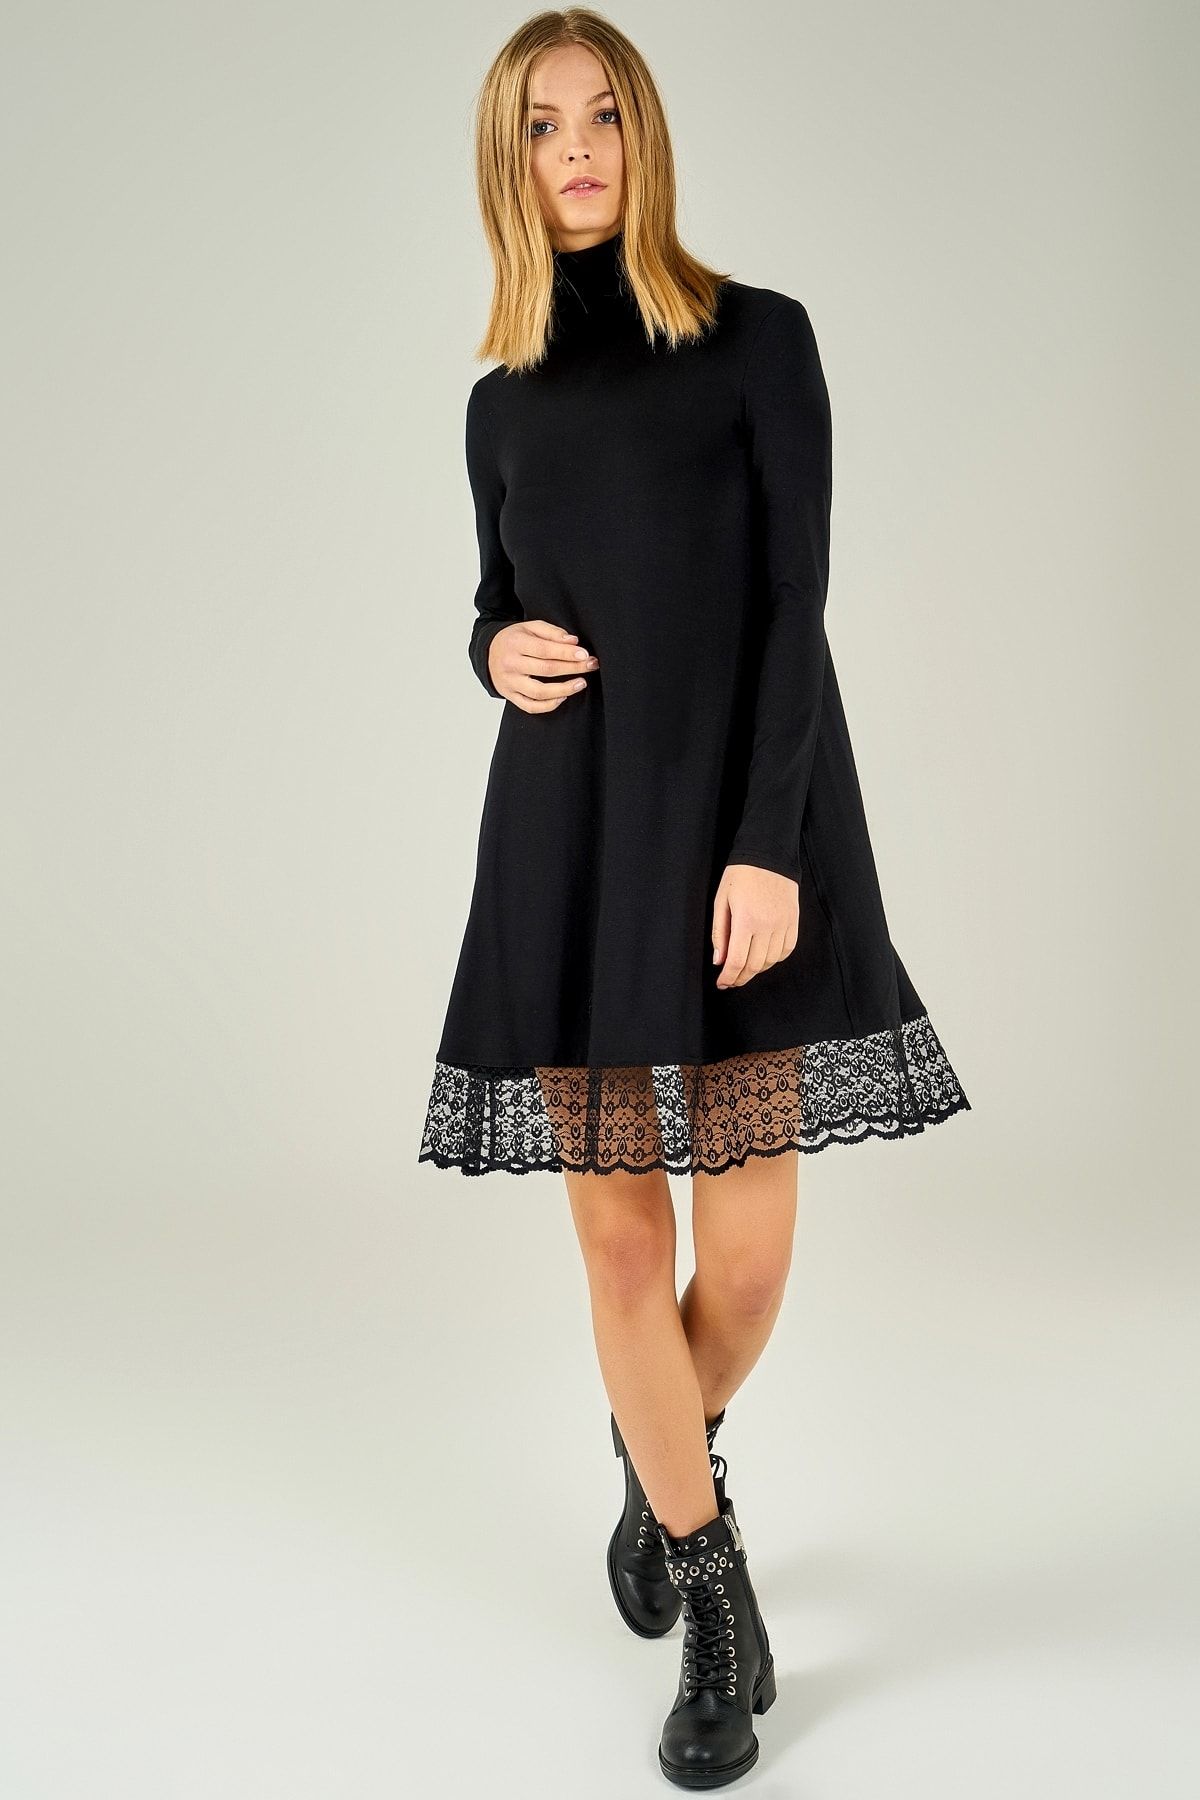 Boutiquen Kadın Siyah Eteği Dantelli Balıkçı Yaka Elbise 2022BQ